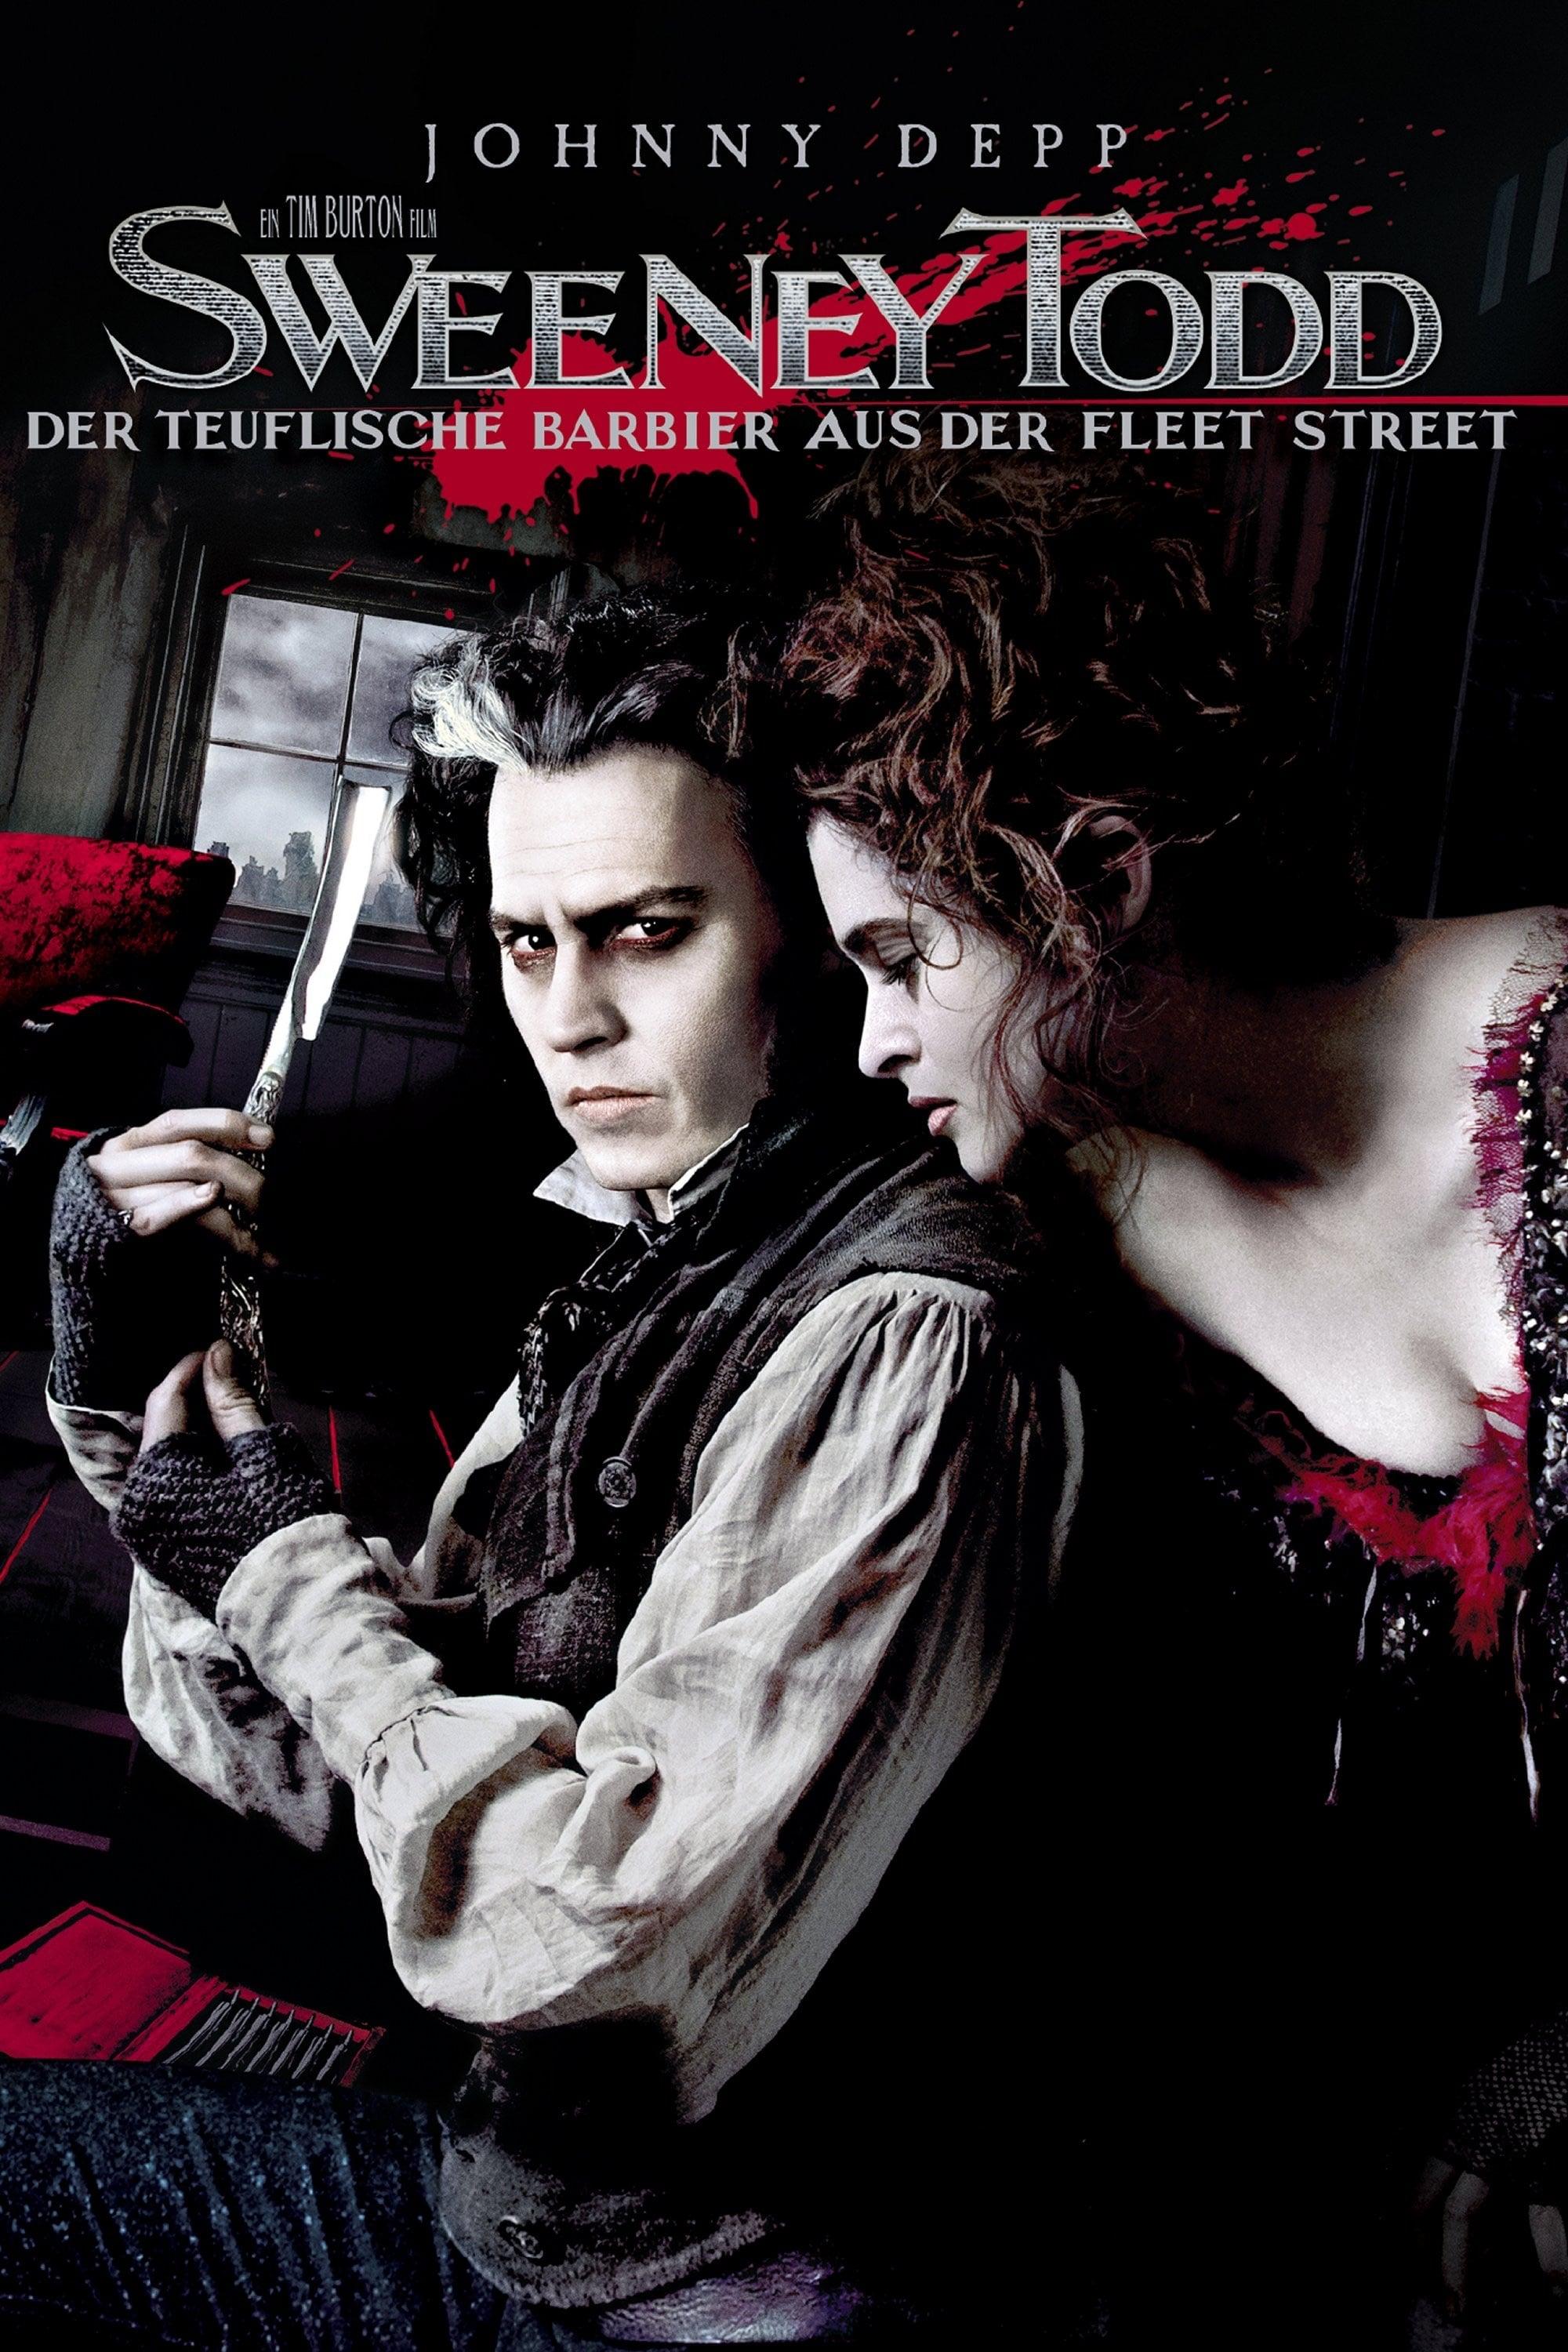 Sweeney Todd - Der teuflische Barbier aus der Fleet Street poster